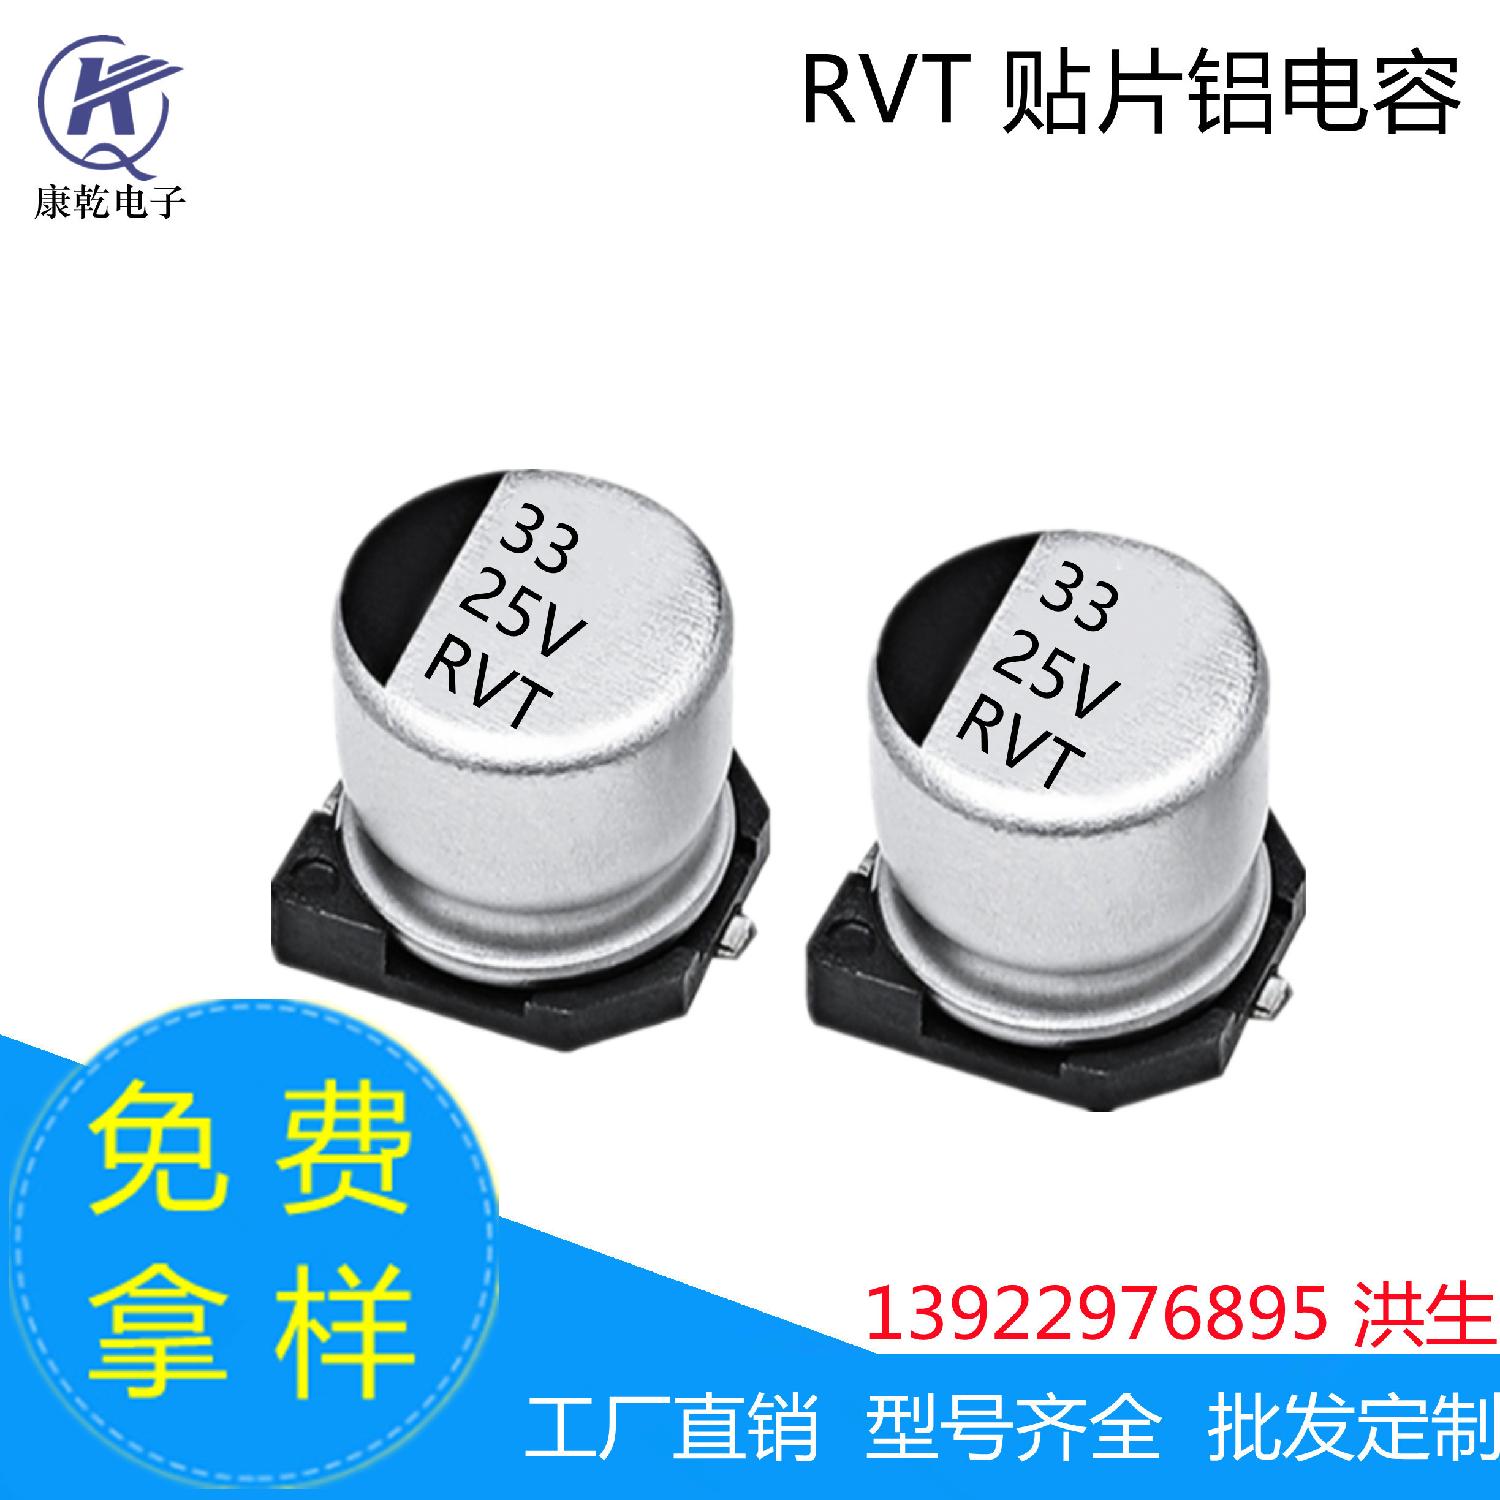 厂家现货 RVT 贴片铝电解电容器 33uF 25V  5*5.4mm  6.3*5.4mm 33uF 25V